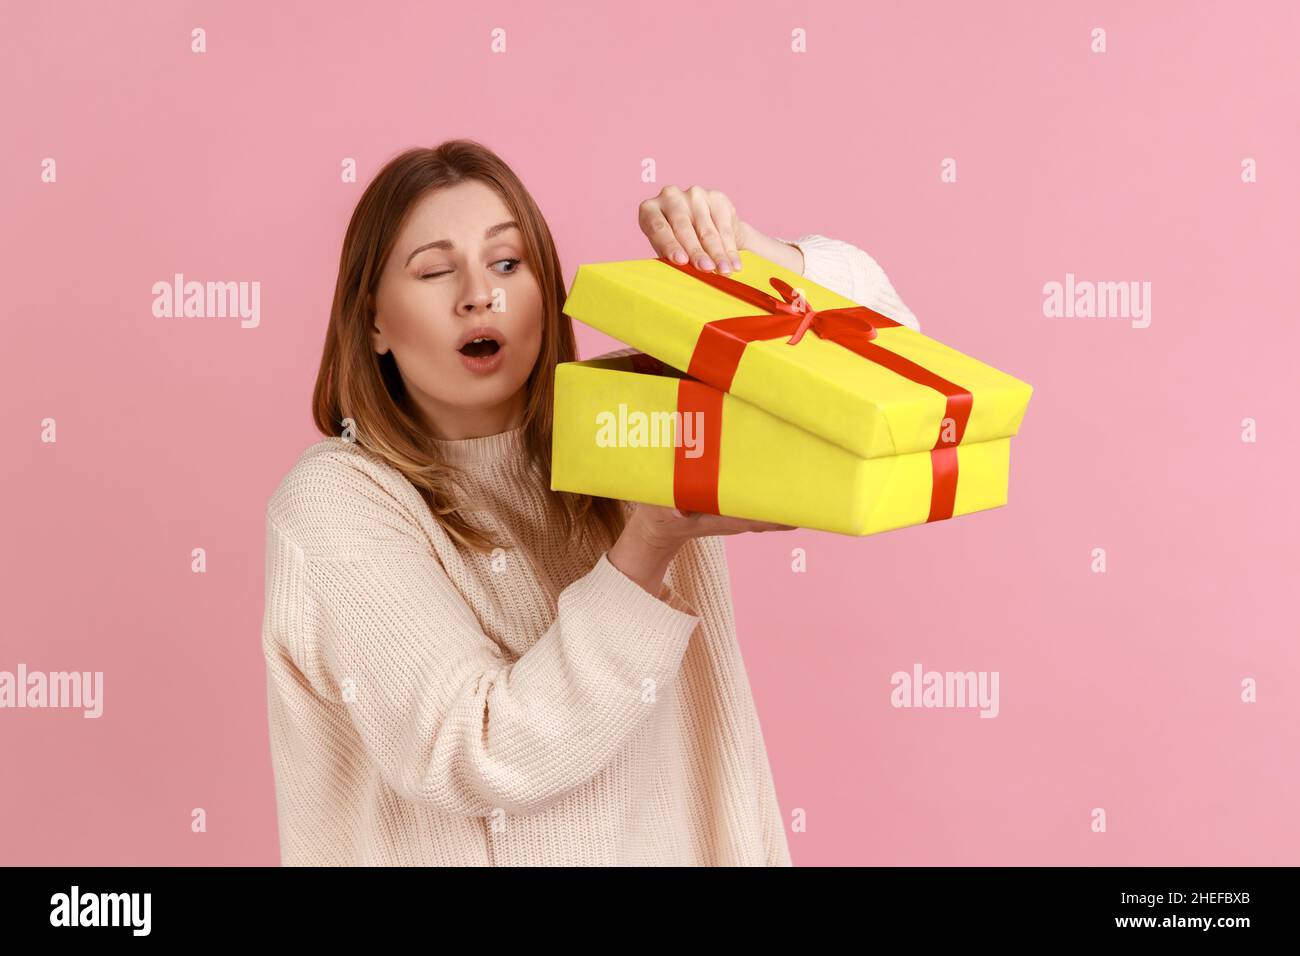 Porträt der neugierigen attraktiven jungen blonden Frau, die in gelben Geschenk-Box, interessiert, was im Inneren, trägt weißen Pullover. Innenaufnahme des Studios isoliert auf rosa Hintergrund. Stockfoto